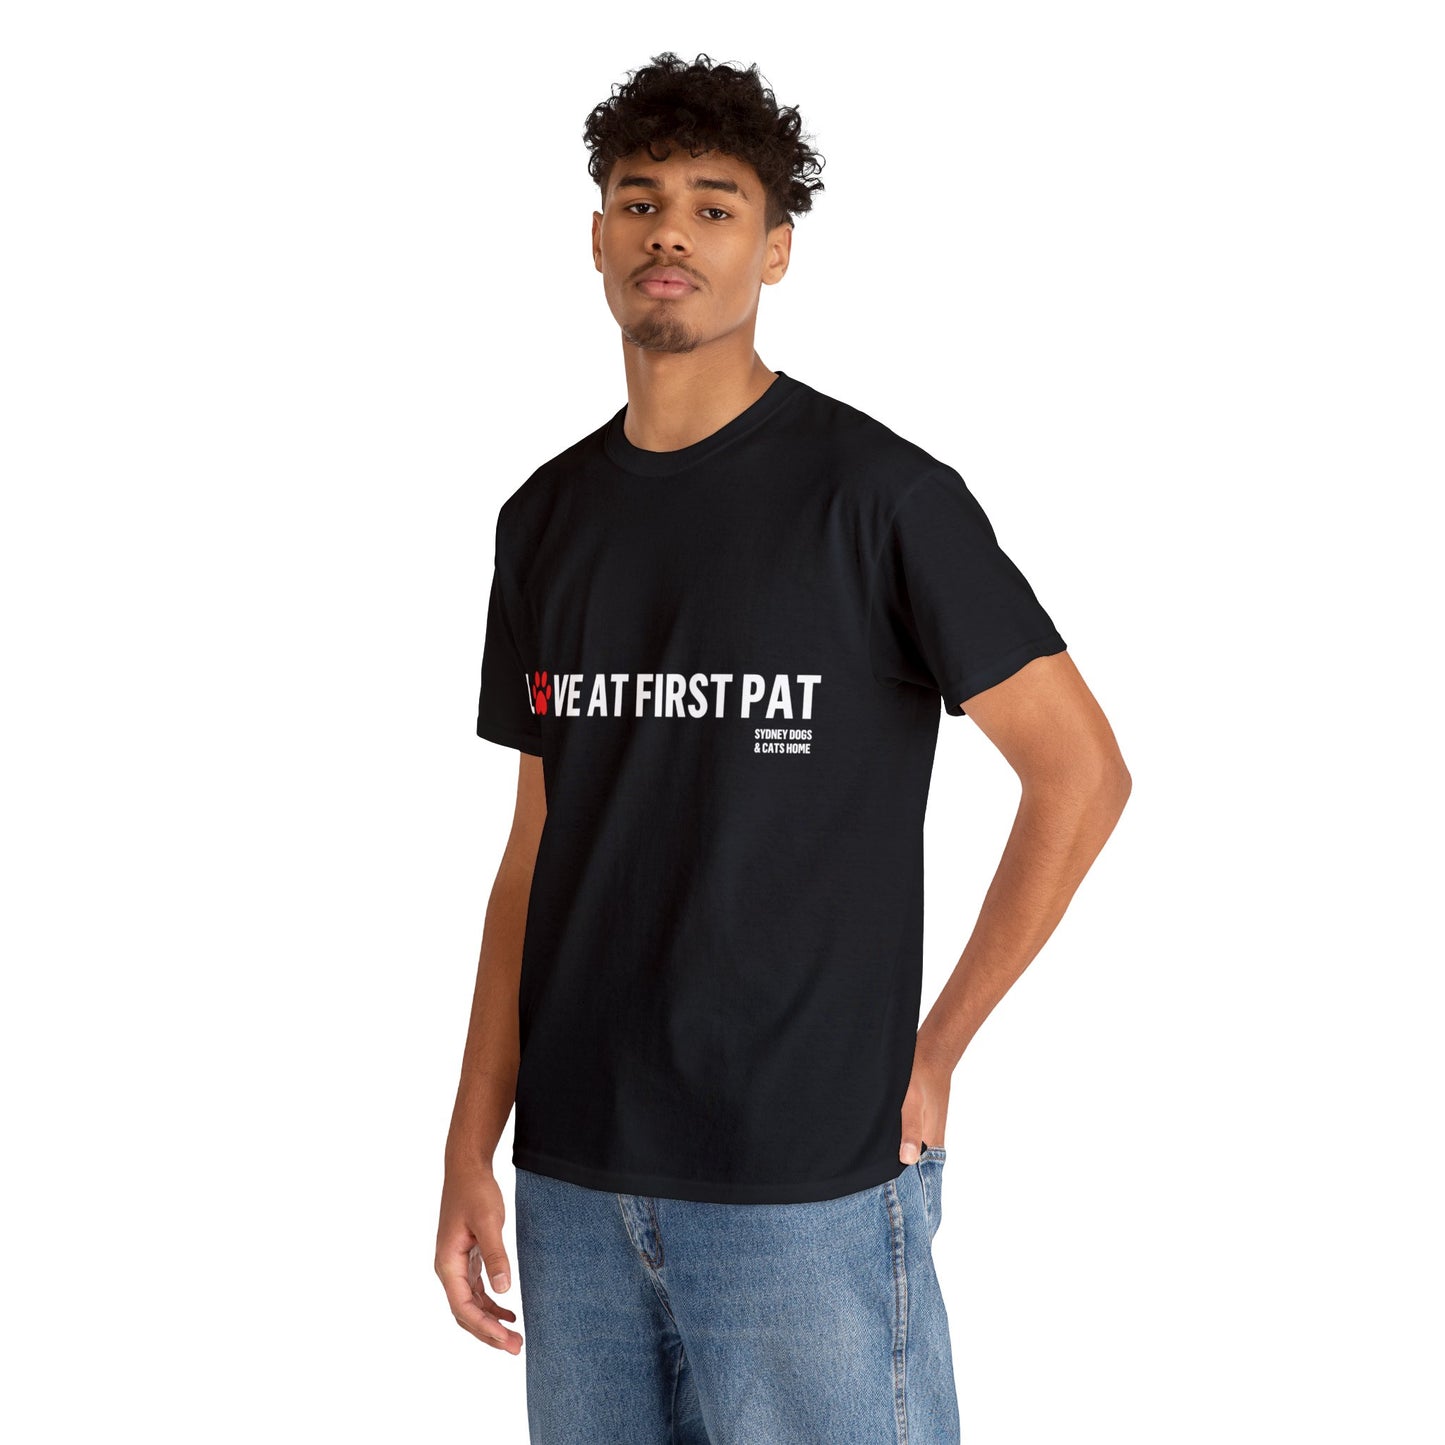 T-Shirt - Love at First Pat